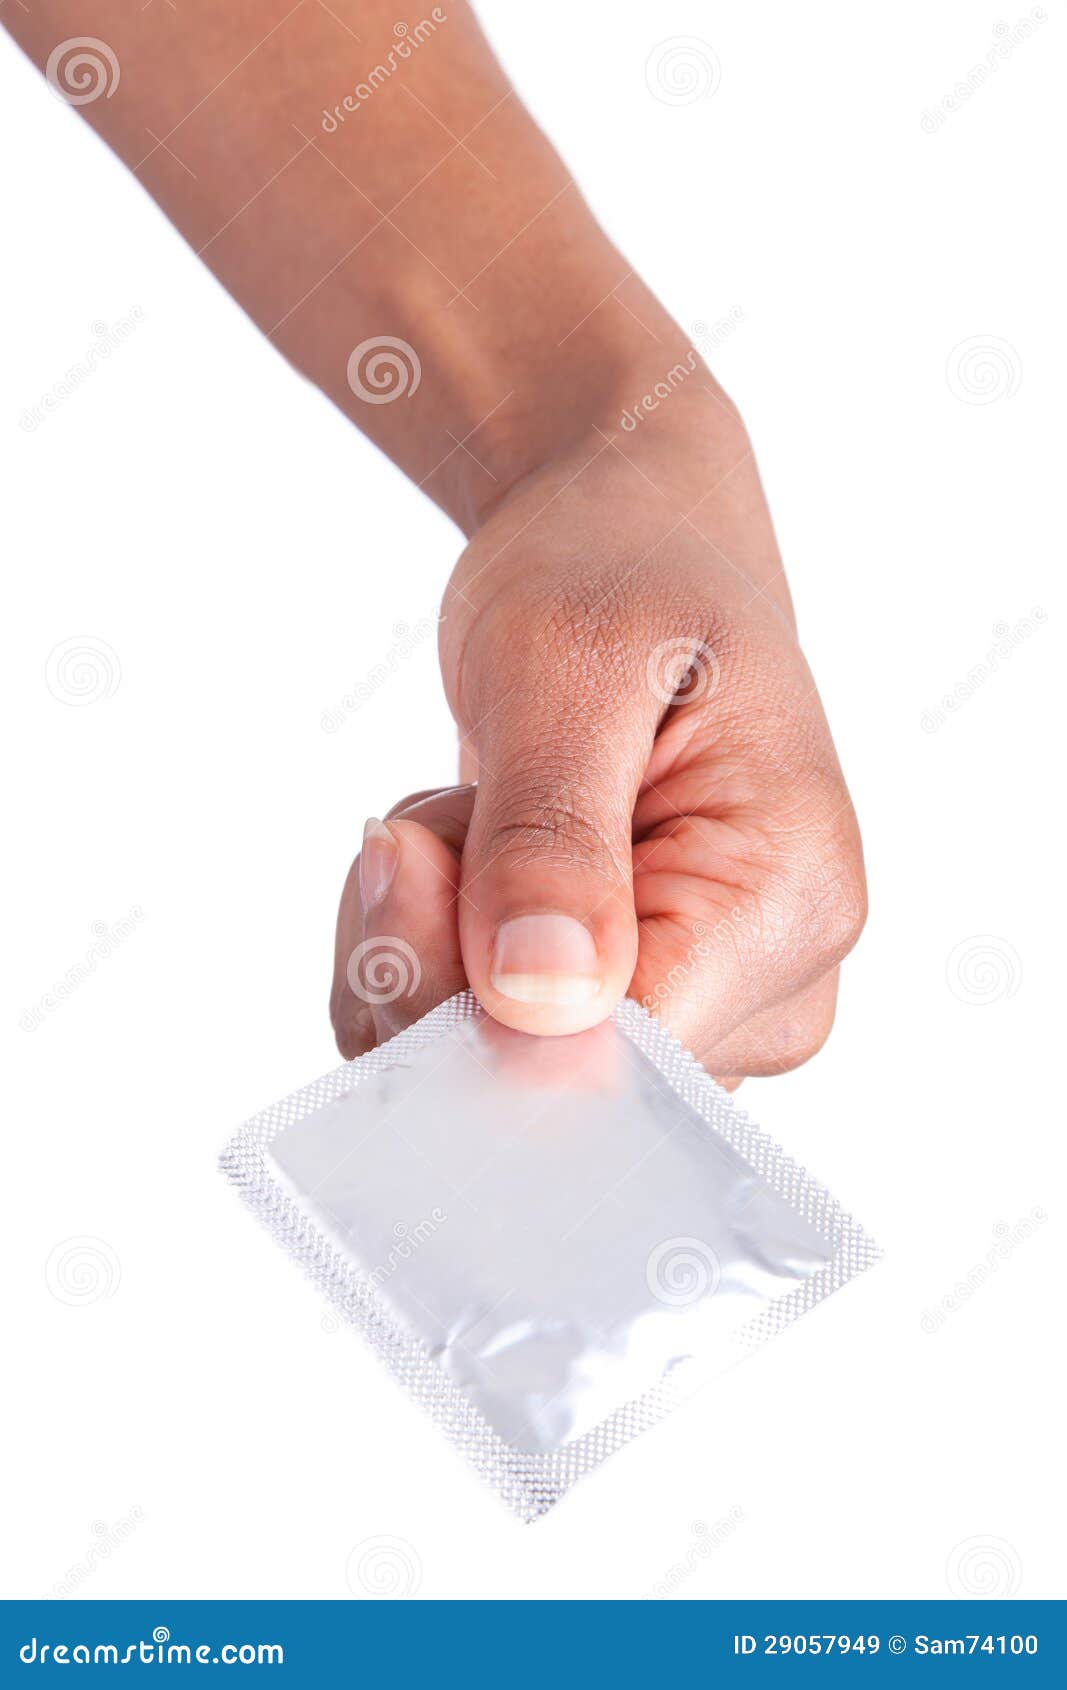 Veilig Geslachtsconcept Afrikaanse Vrouwenhand Met Condoom Stock